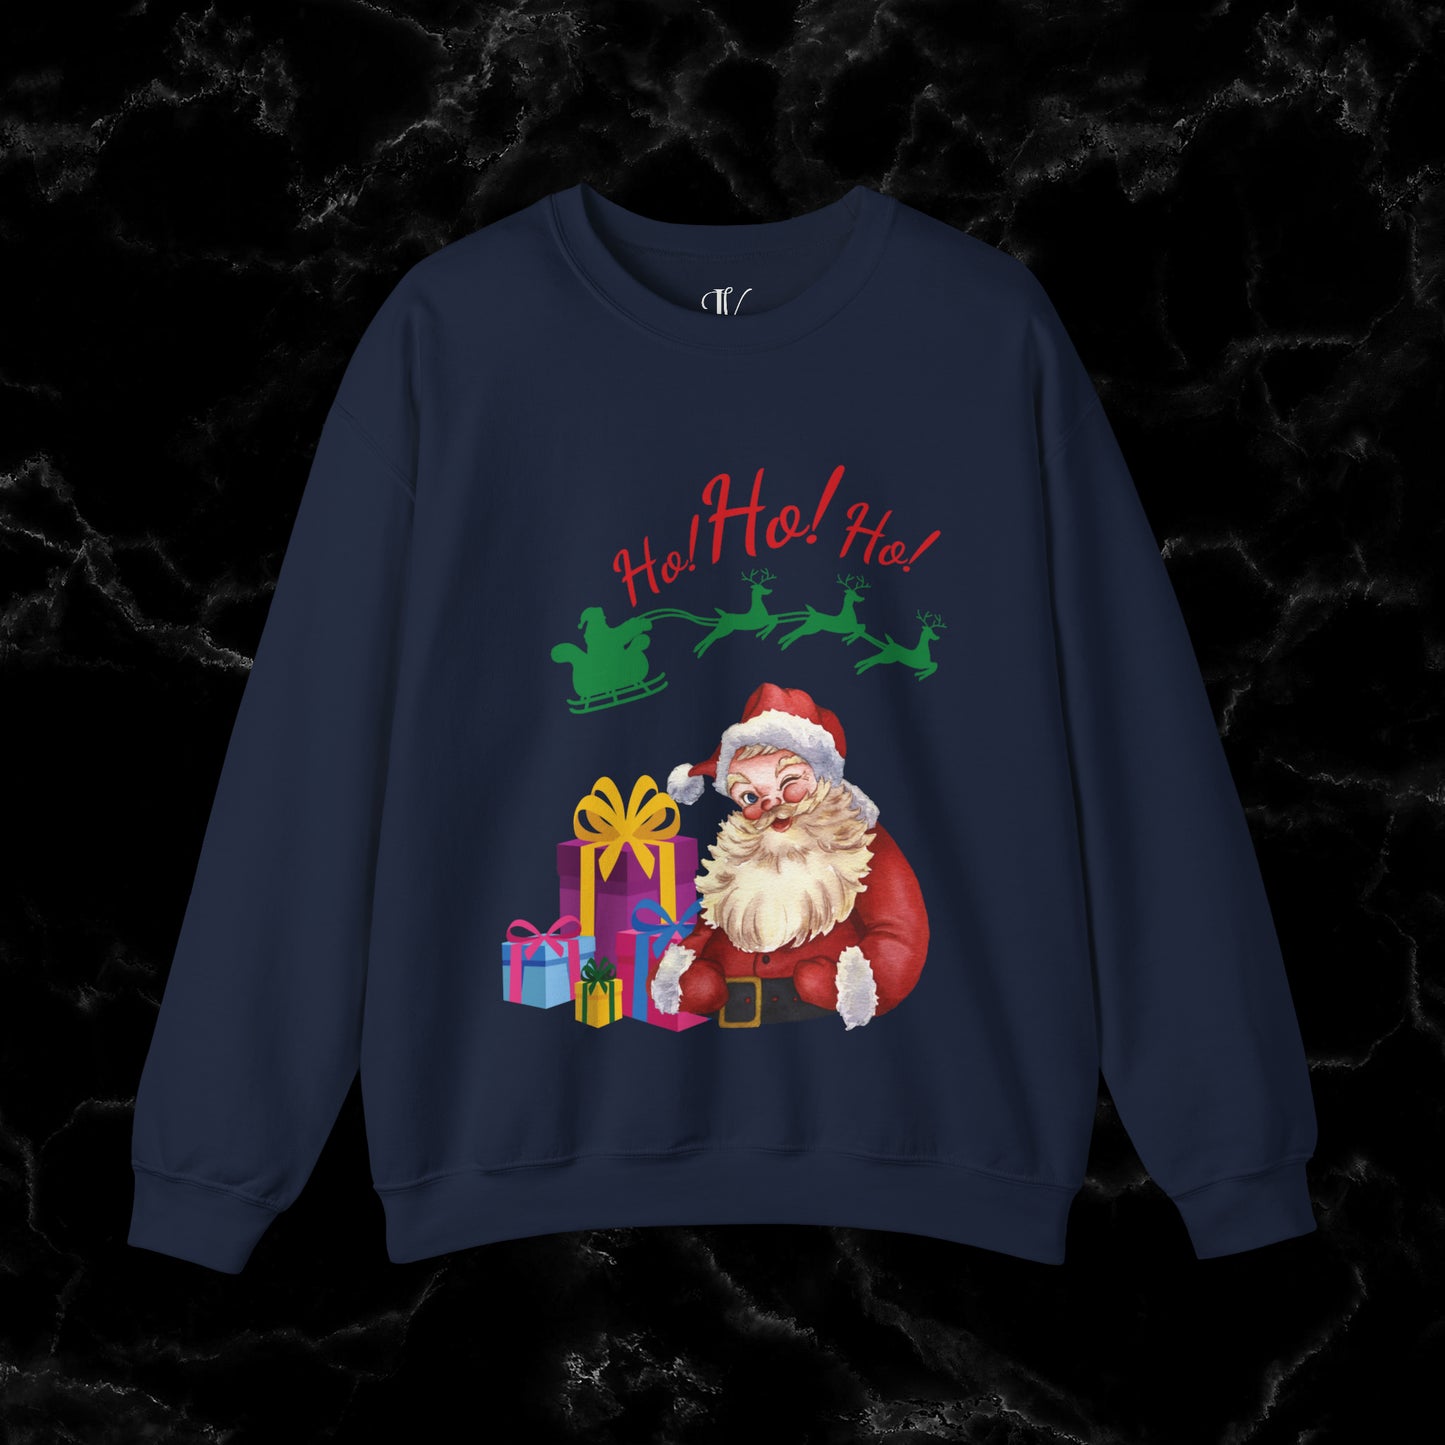 Retro Santa Sweatshirt - Vintage Christmas Fashion for Holiday Cheer Sweatshirt S Navy 